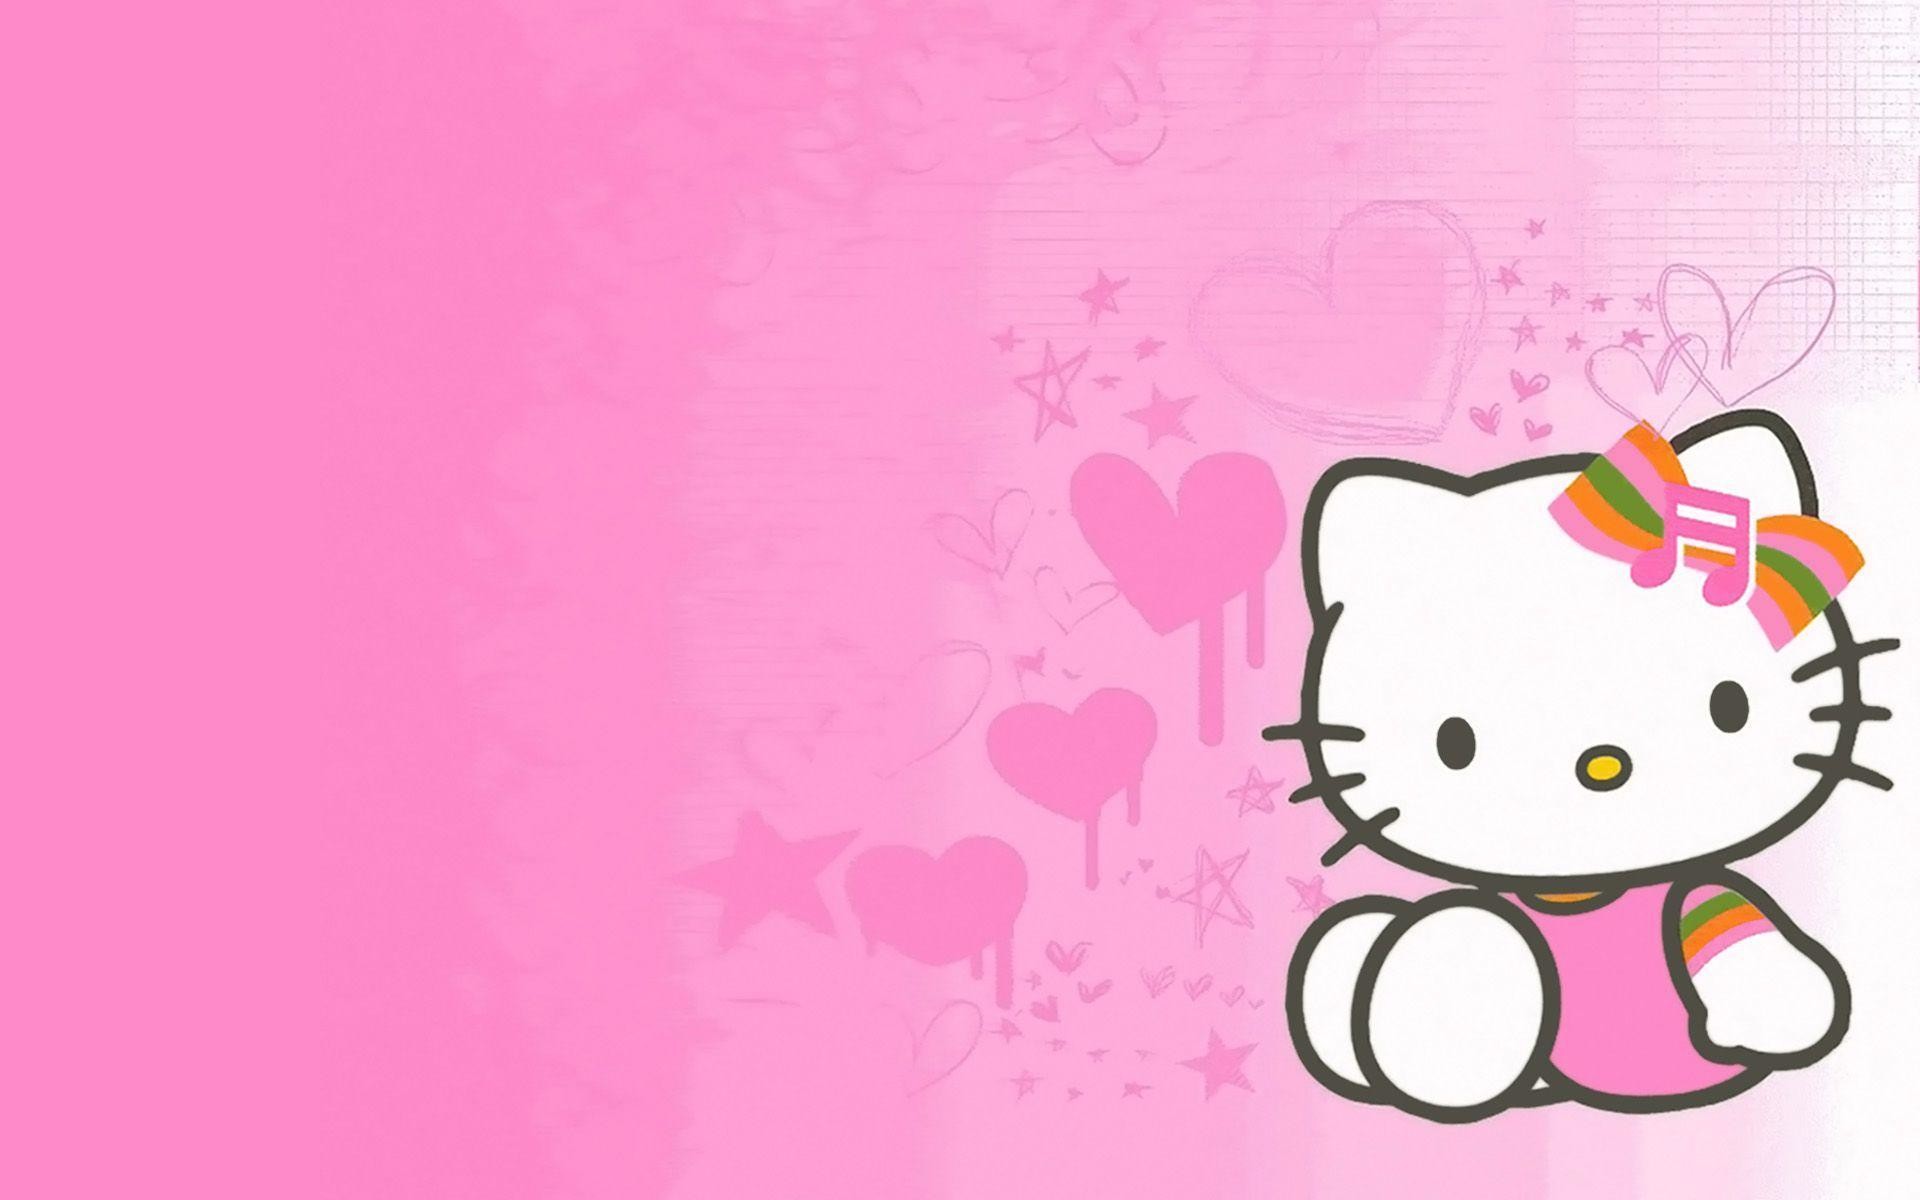 Ghé thăm bộ sưu tập hình nền Hello Kitty màu hồng dễ thương, đáng yêu và đầy cuốn hút. Với những hình ảnh này, bạn sẽ có thể trở về tuổi thơ và cảm nhận được tình yêu thương của nhân vật Hello Kitty. Hãy trang trí máy tính của bạn với những hình nền đẹp, mang lại cho bạn một không gian trẻ trung và phong cách.